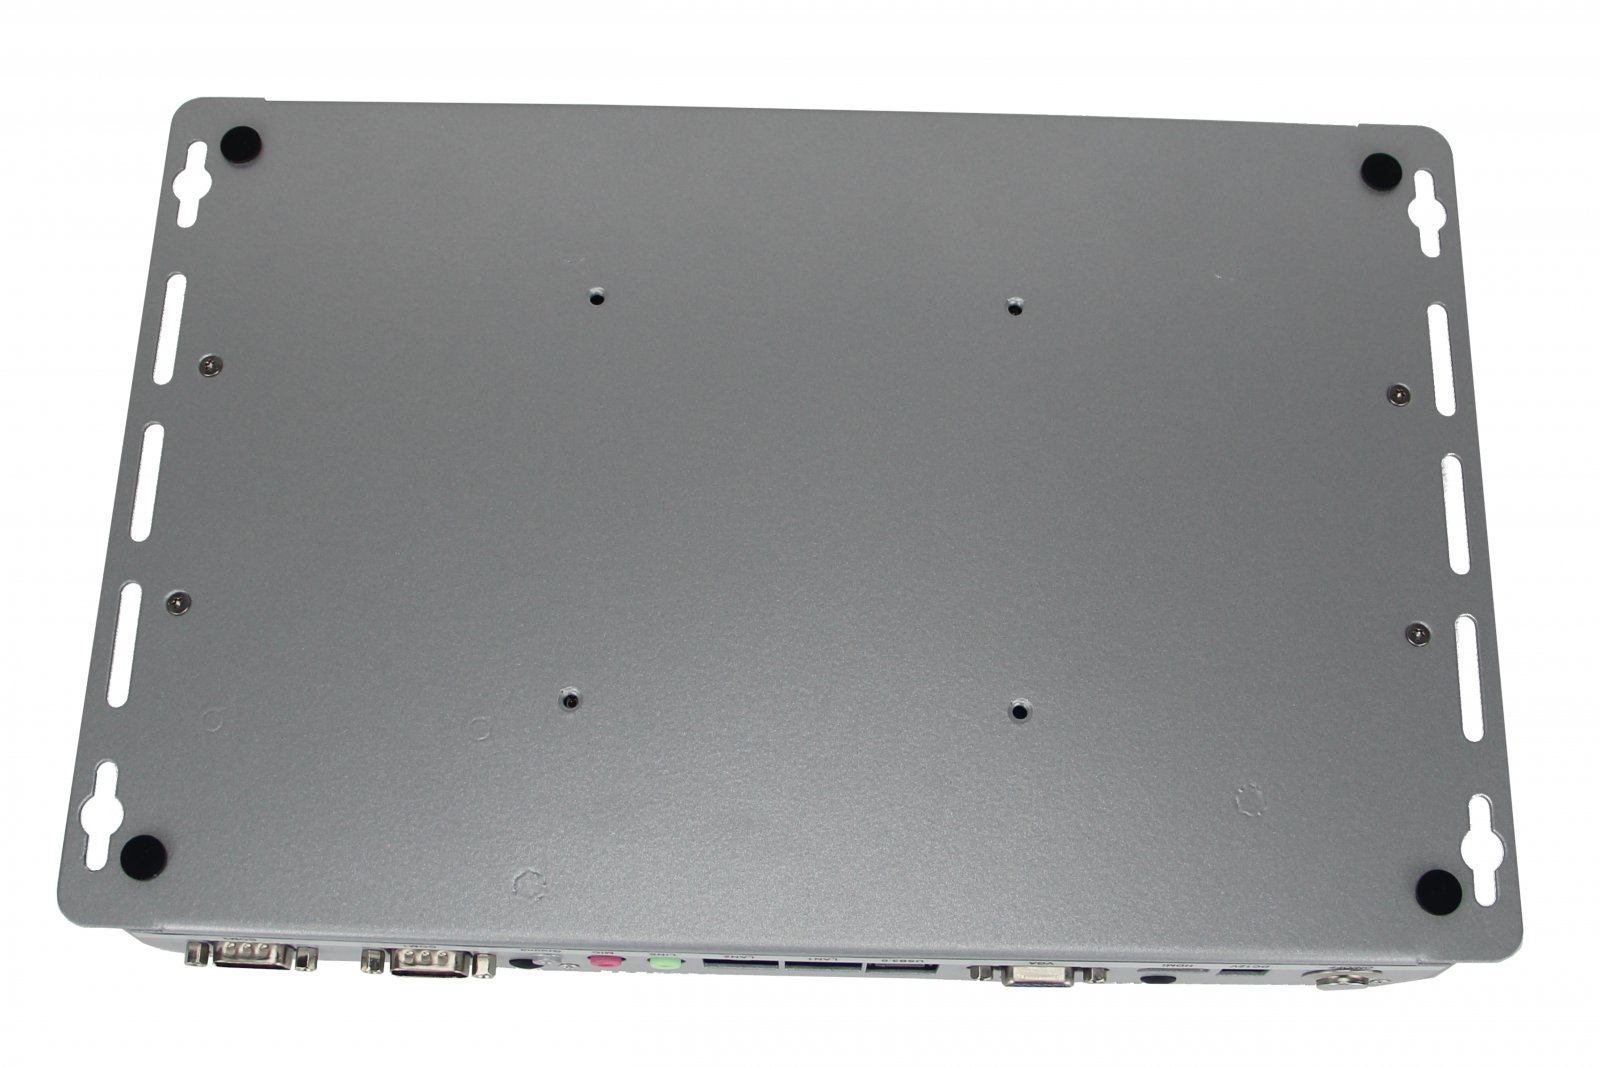  Minimaker BBPC-K04 i5 - Industrial enhanced small computer - Inter Core i5 processor, 2x LAN RJ45 and 6x COM RS232